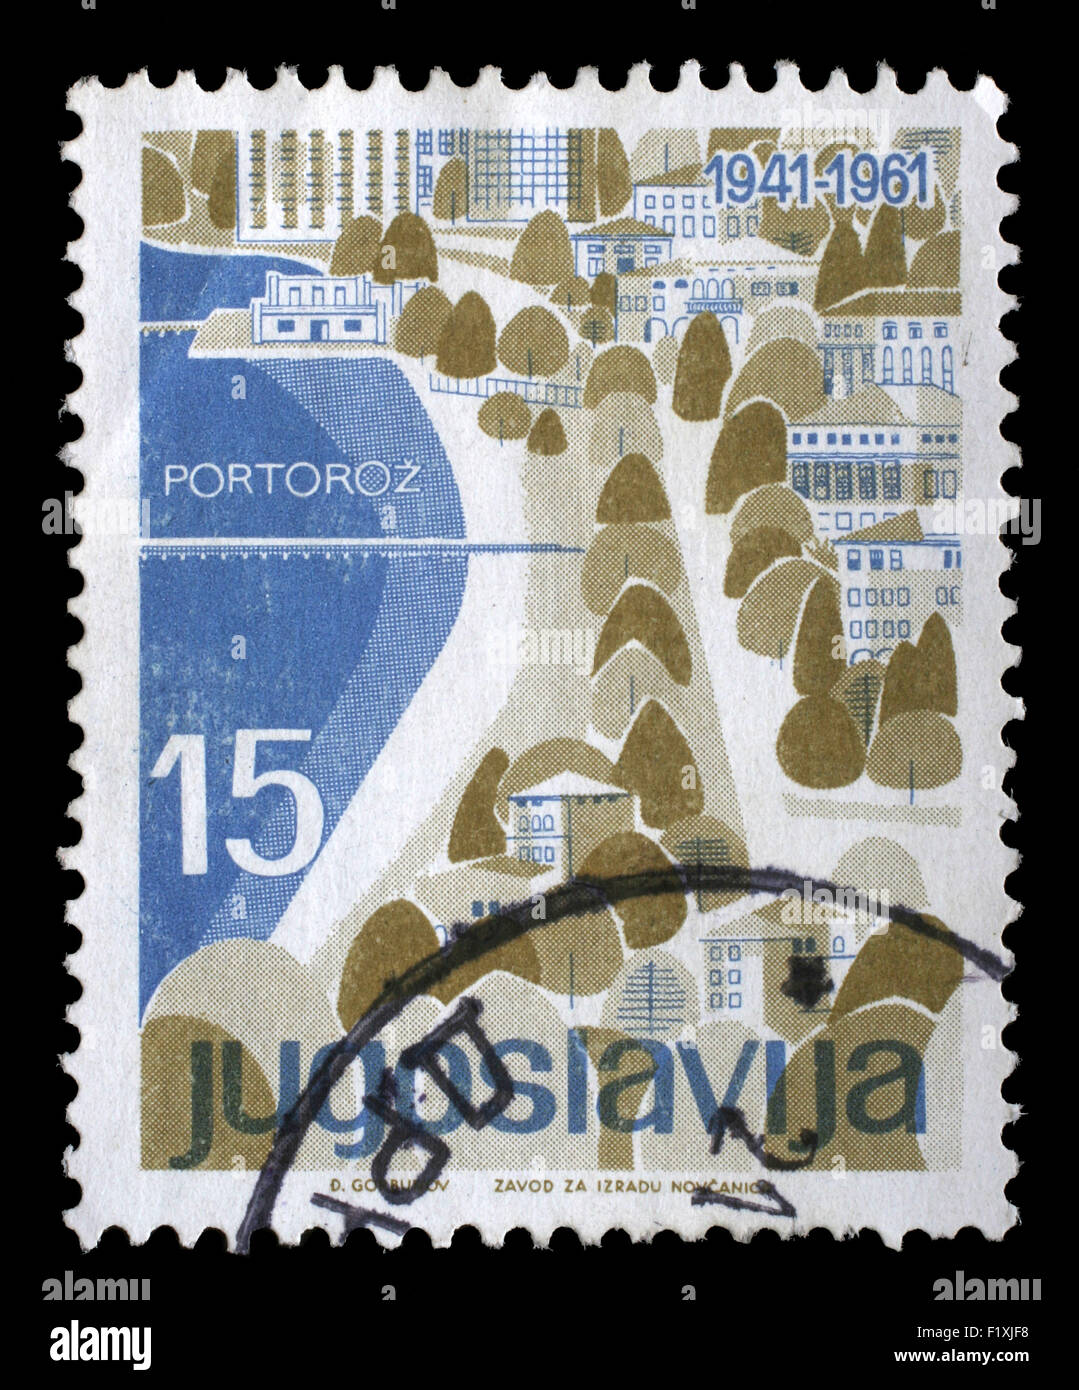 Timbres en Yougoslavie à partir de la question du tourisme local montre Portoroz, Slovénie, vers 1961. Banque D'Images